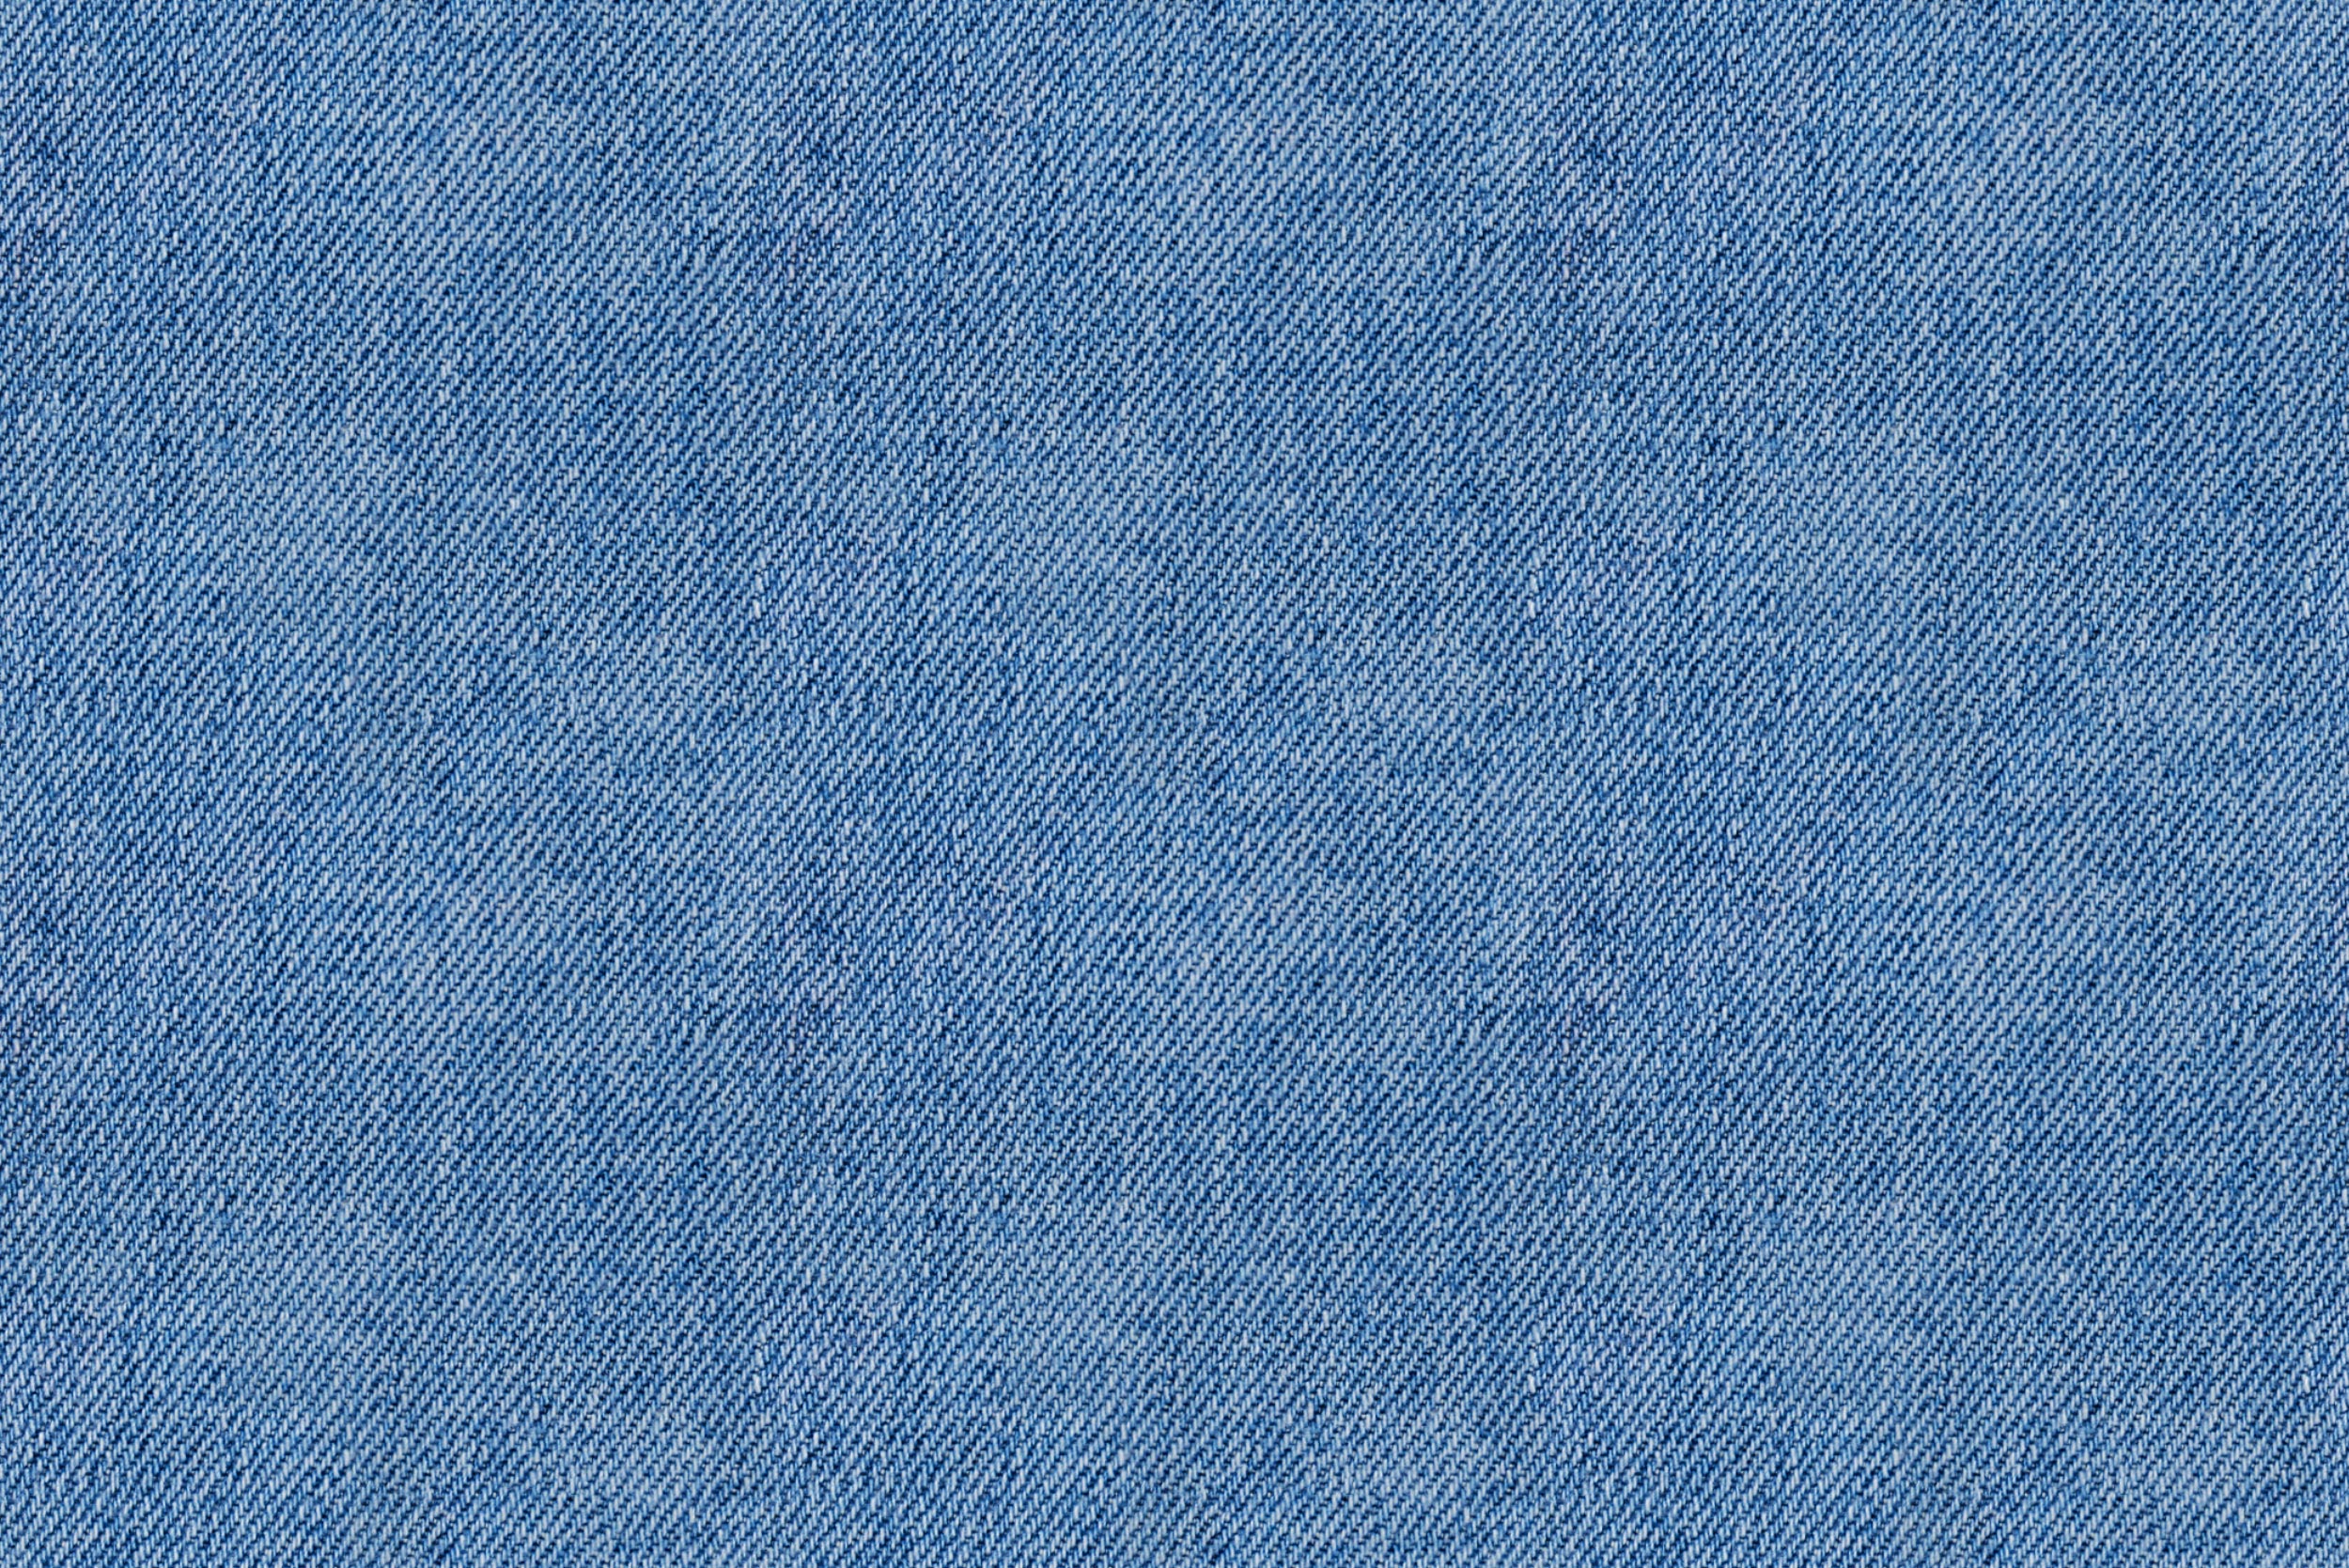 Текстура джинсы из голубой ткани деним.